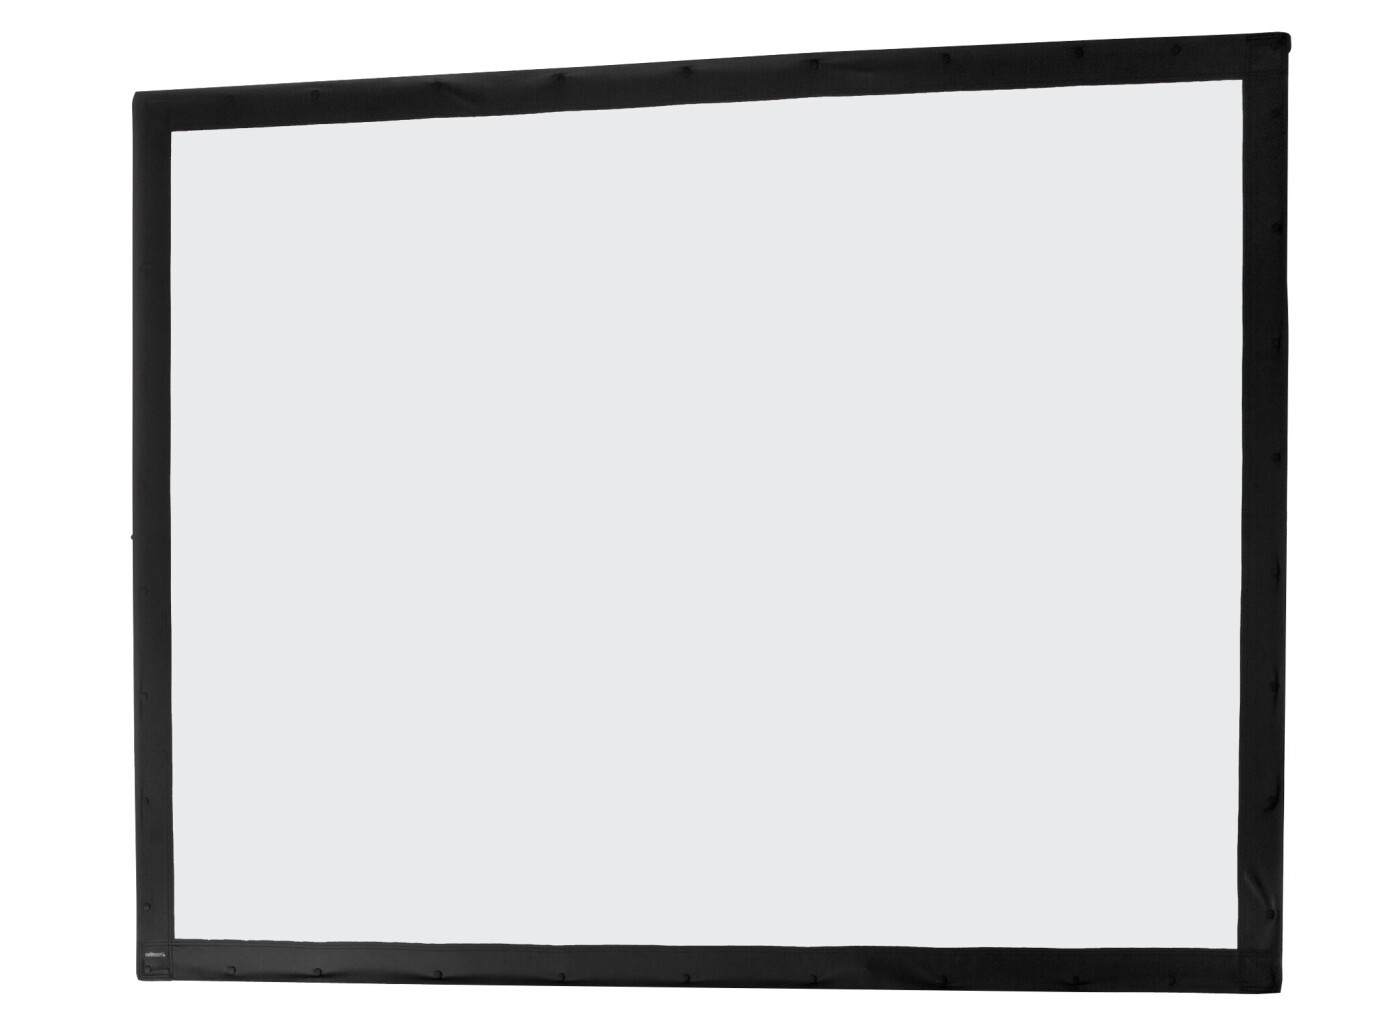 Toile 203 x 152 cm Ecran sur cadre celexon « Mobil Expert », projection avant